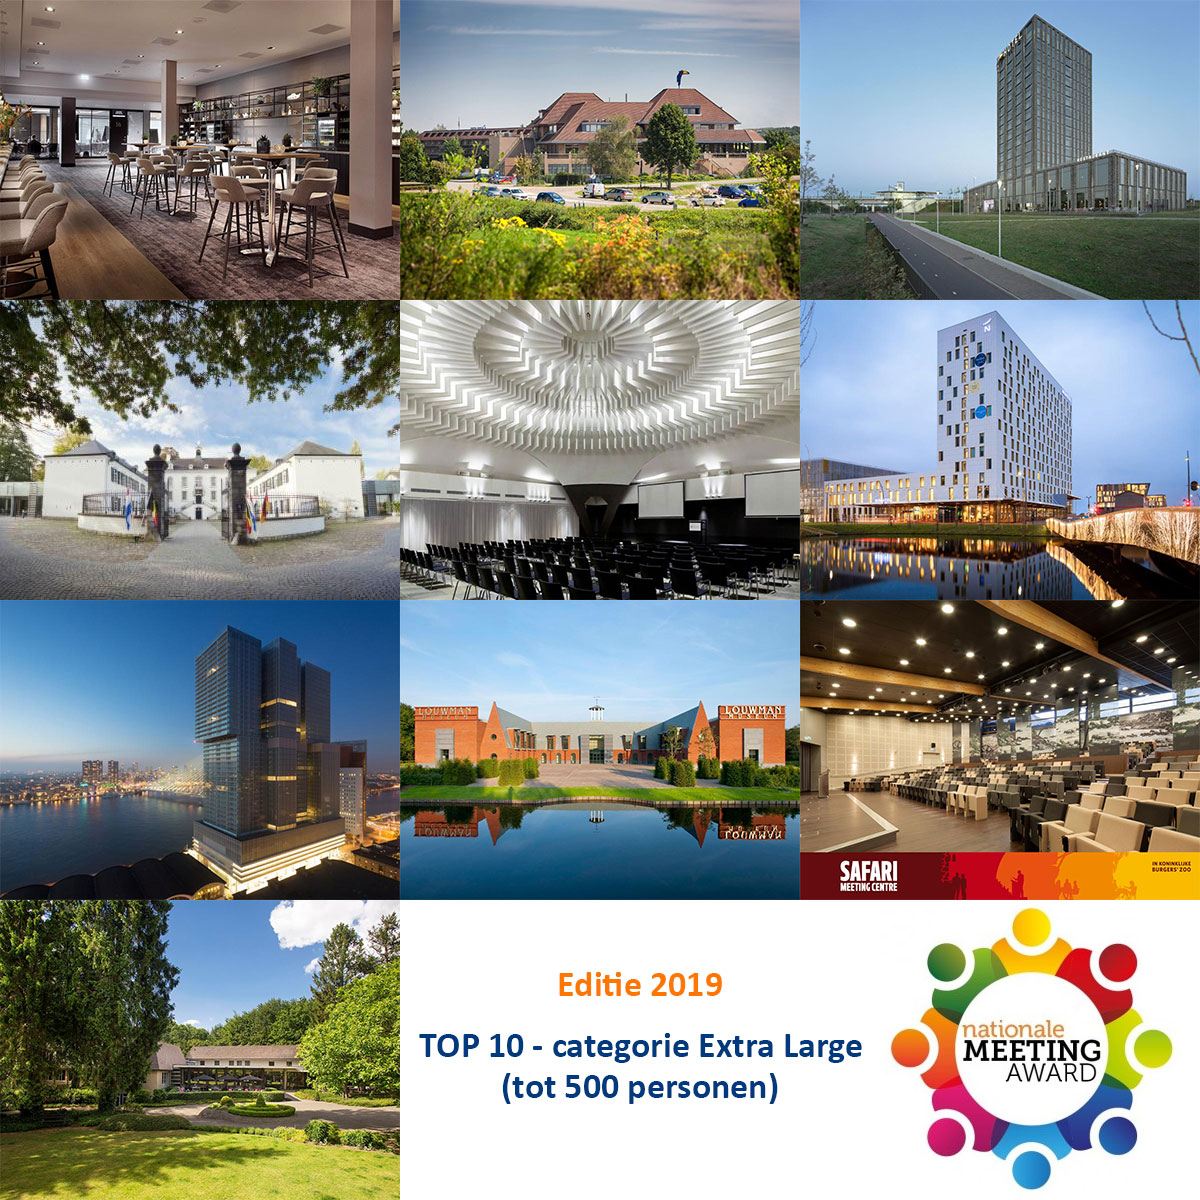 Beste 10 vergaderlocaties tot 500 personen in Nederland 2019